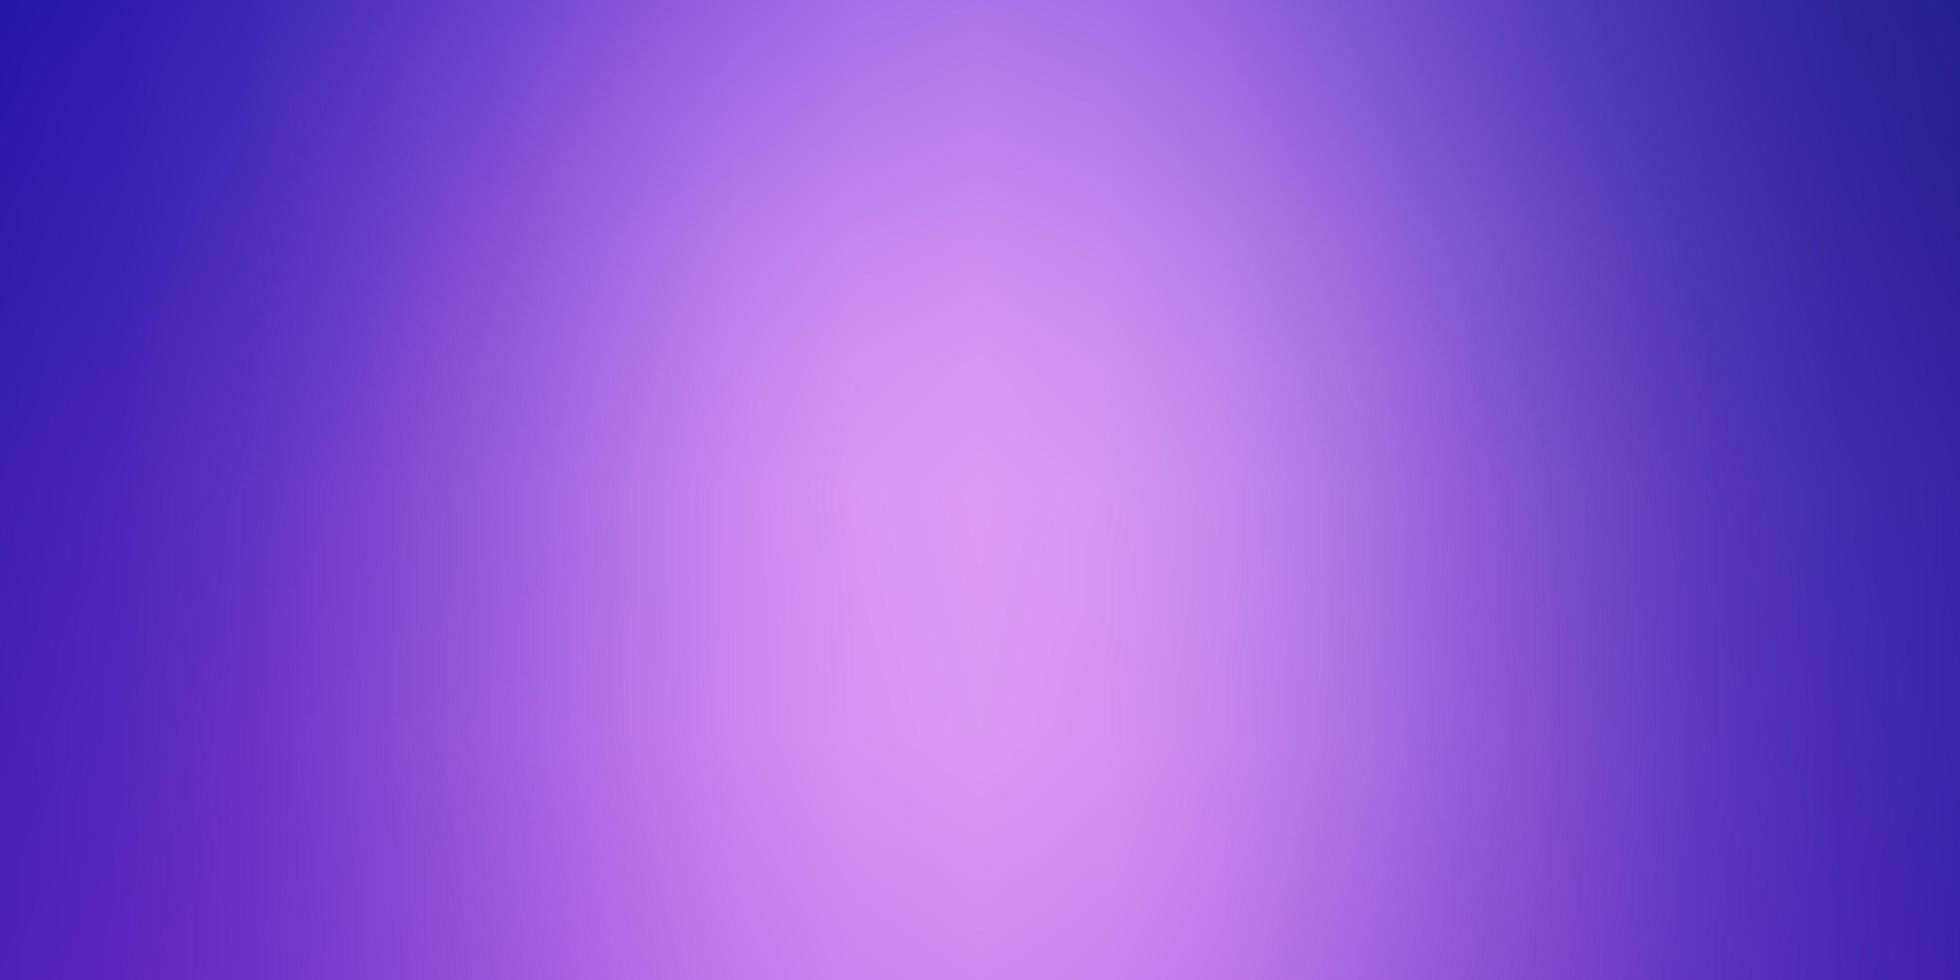 diseño borroso abstracto del vector púrpura claro.